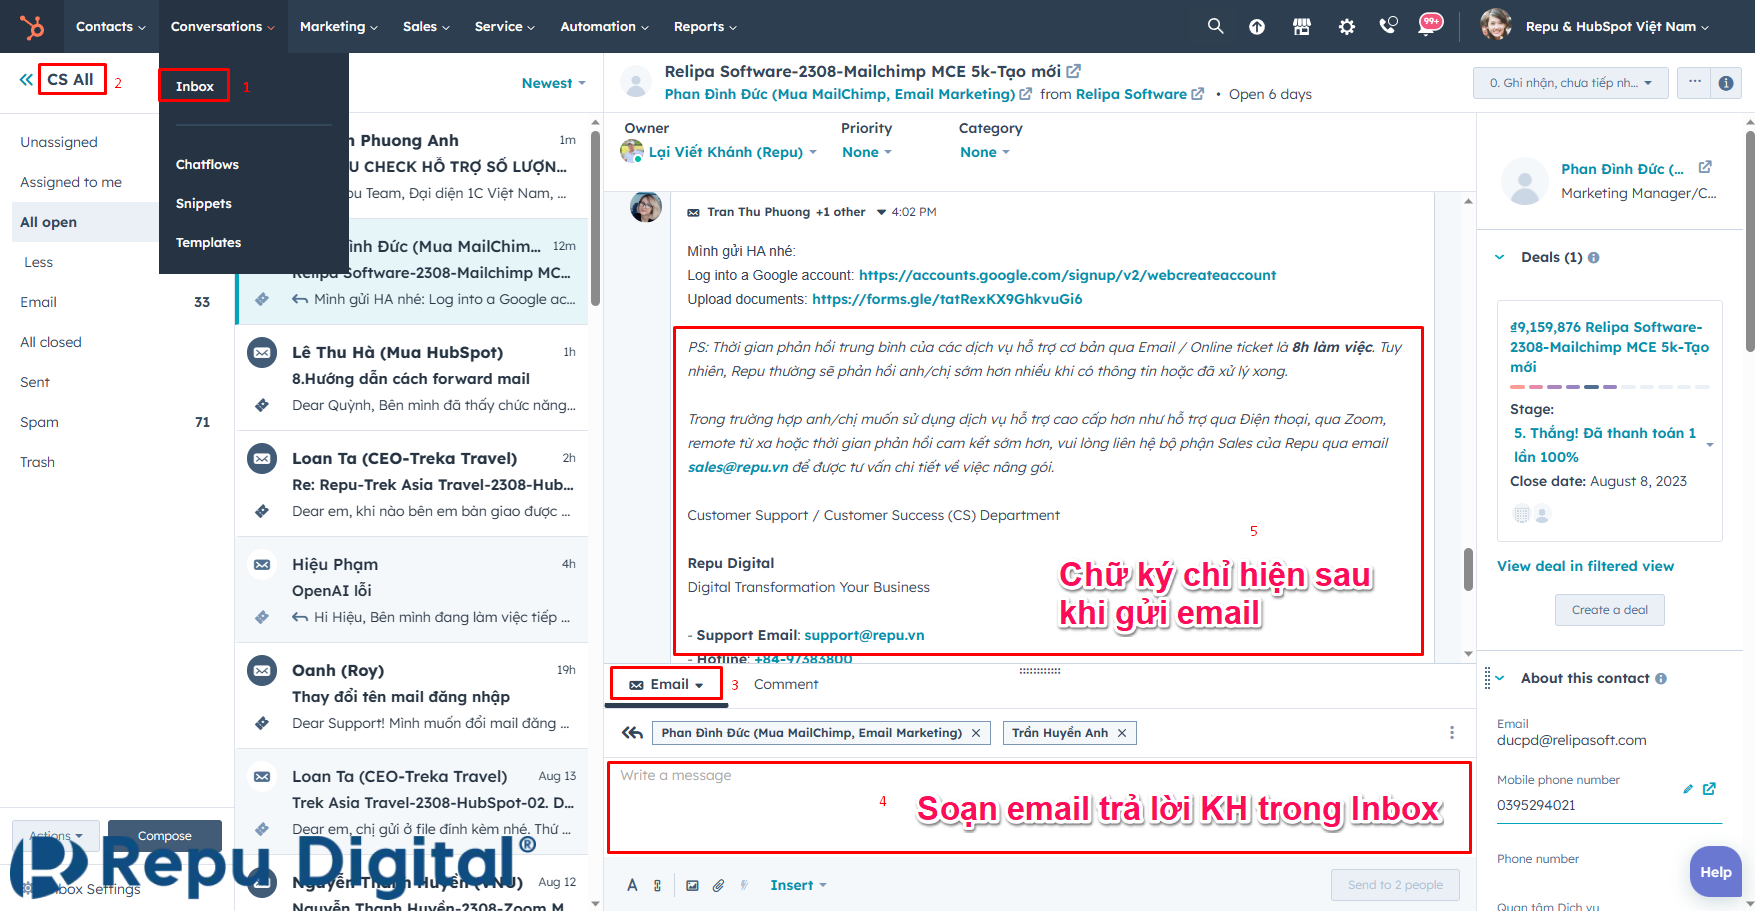 Gửi email qua Inbox để check xem thiết lập chữ ký cho team email đã OK chưa